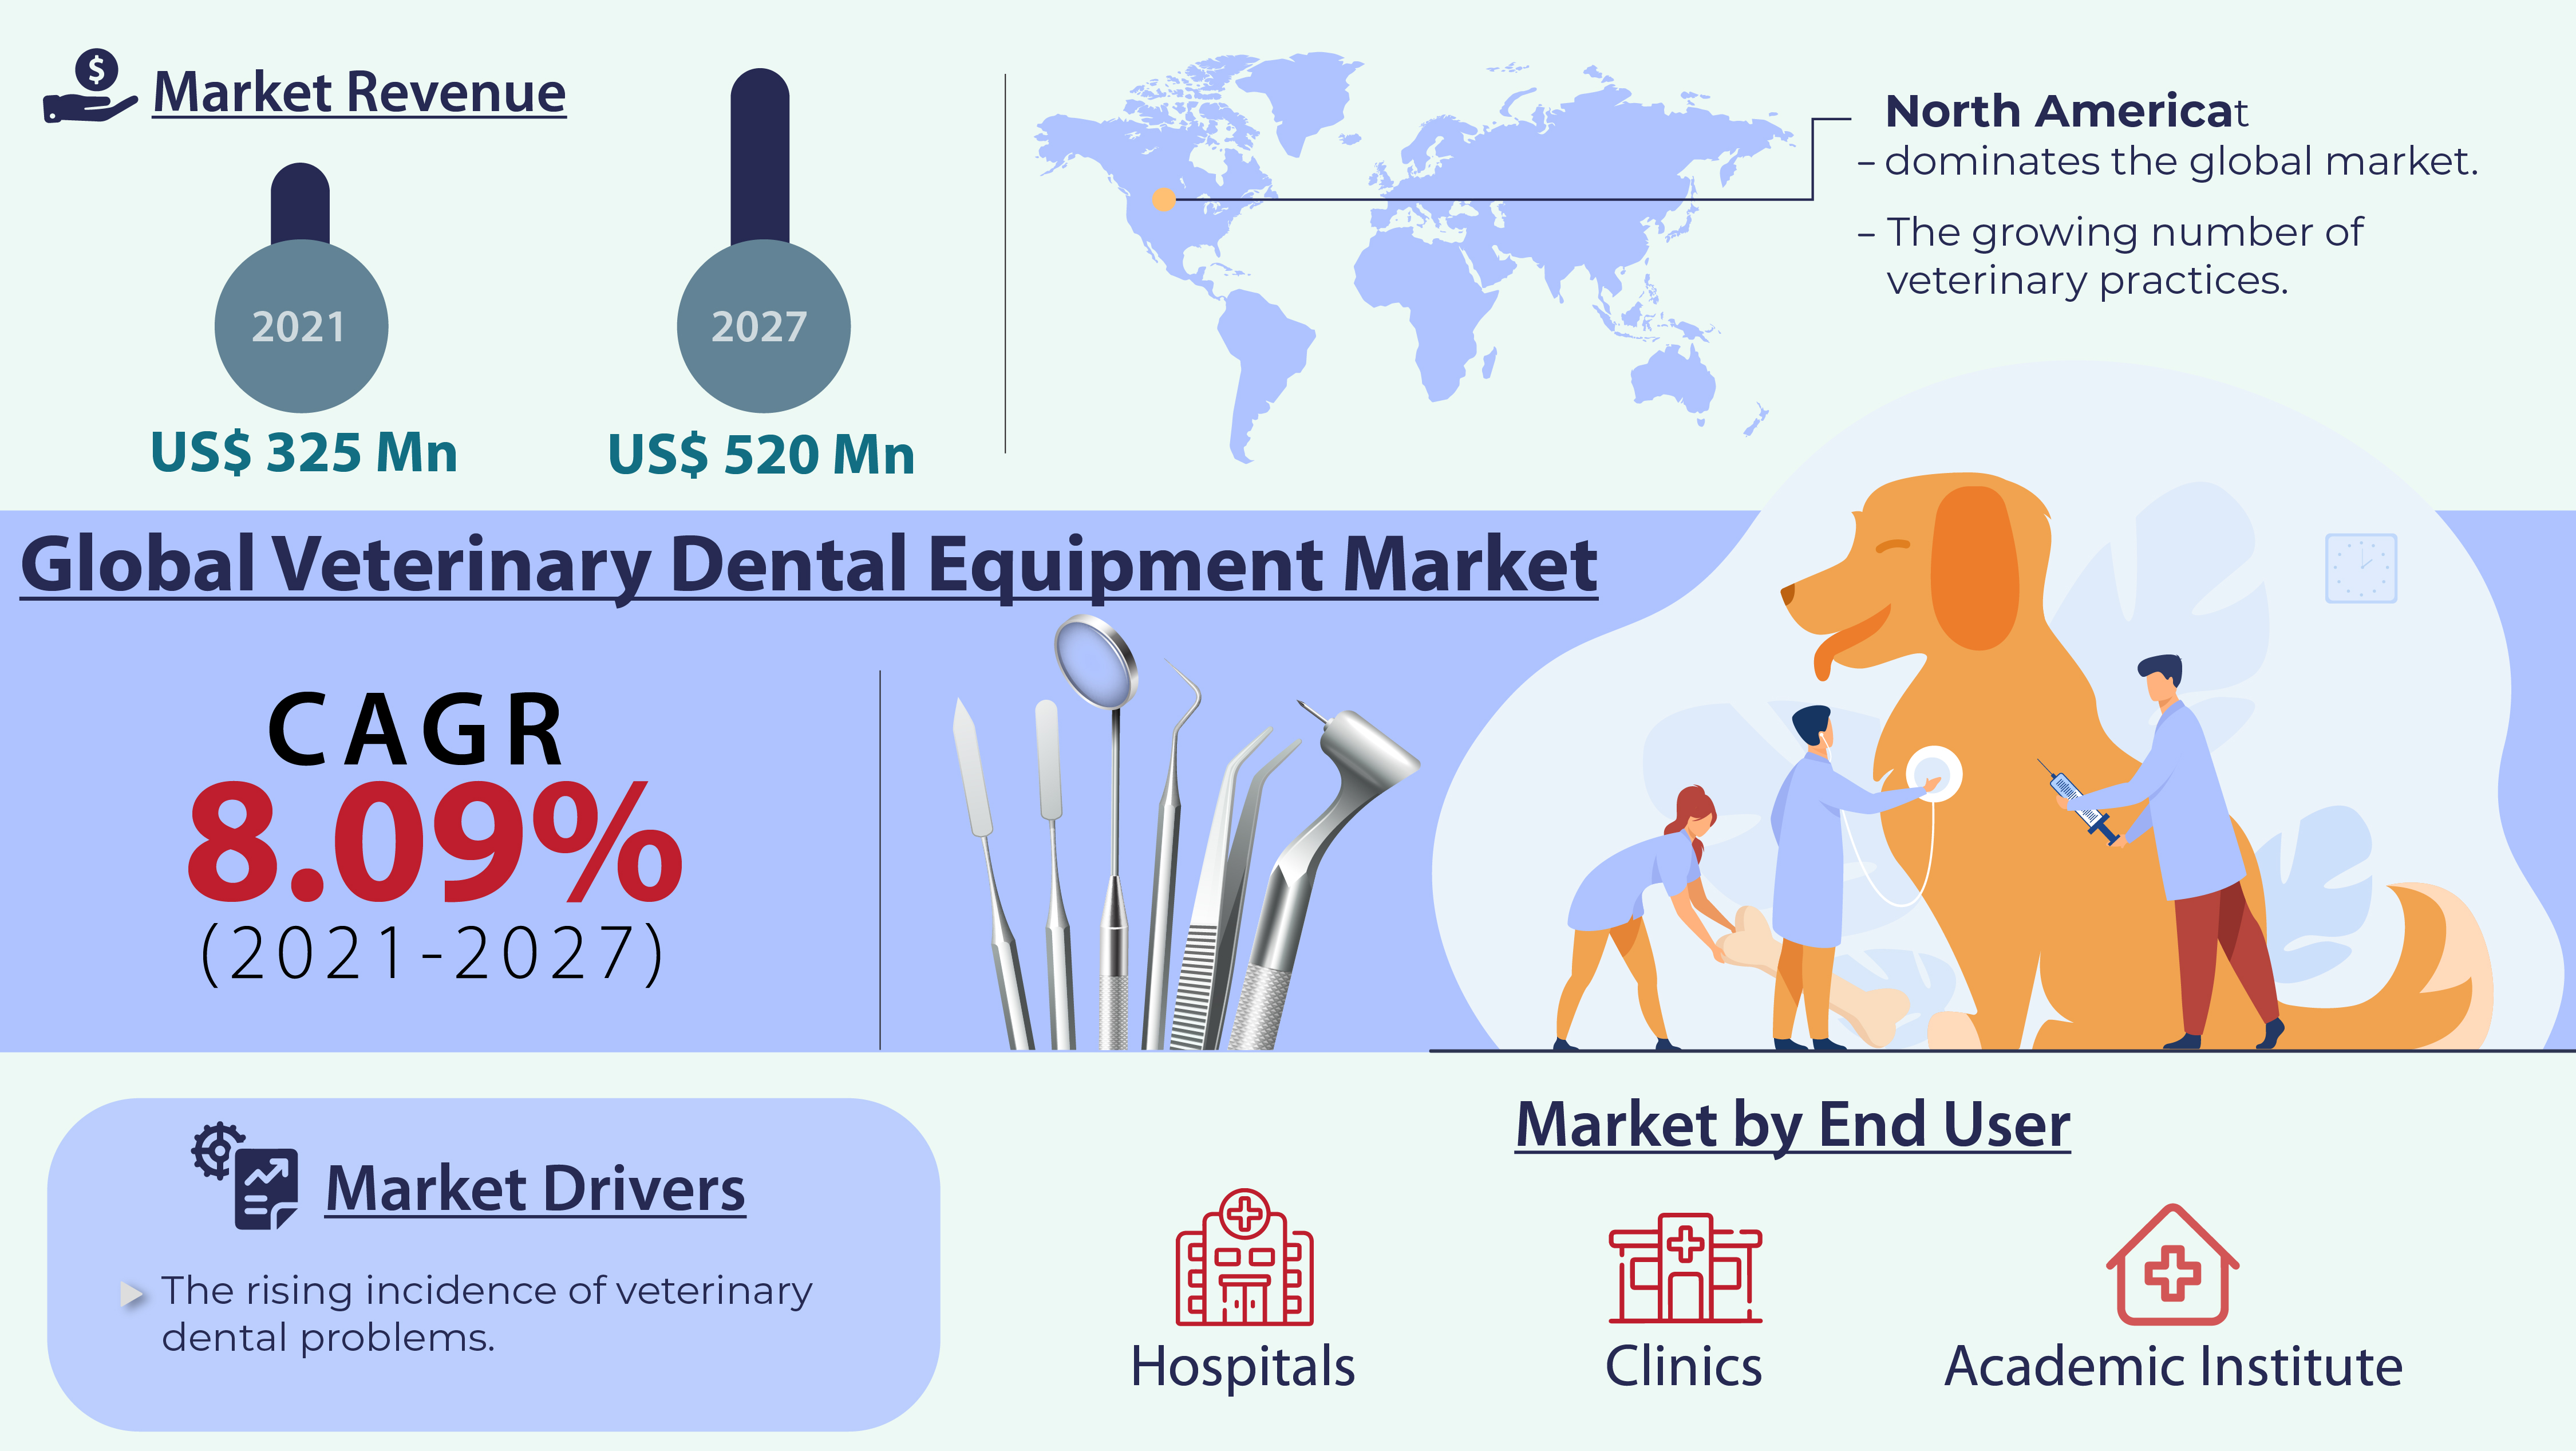 Veterinary Dental Equipment Market